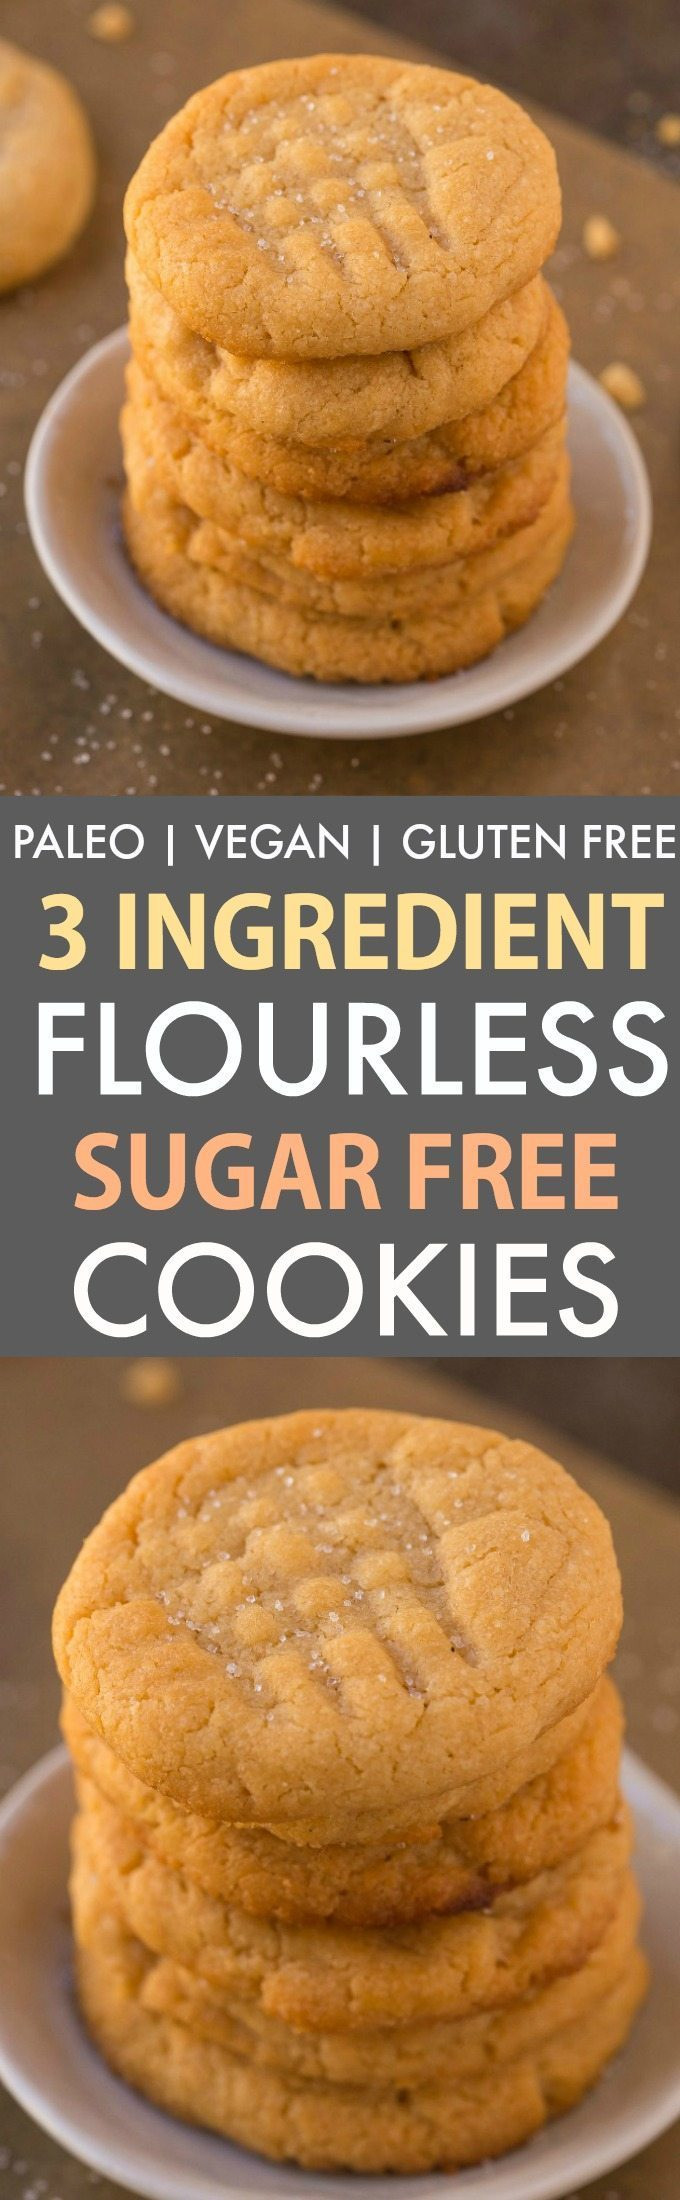 3 Ingredient Sugar Cookies
 3 Ingre nt Sugar Free Flourless Cookies Paleo Vegan